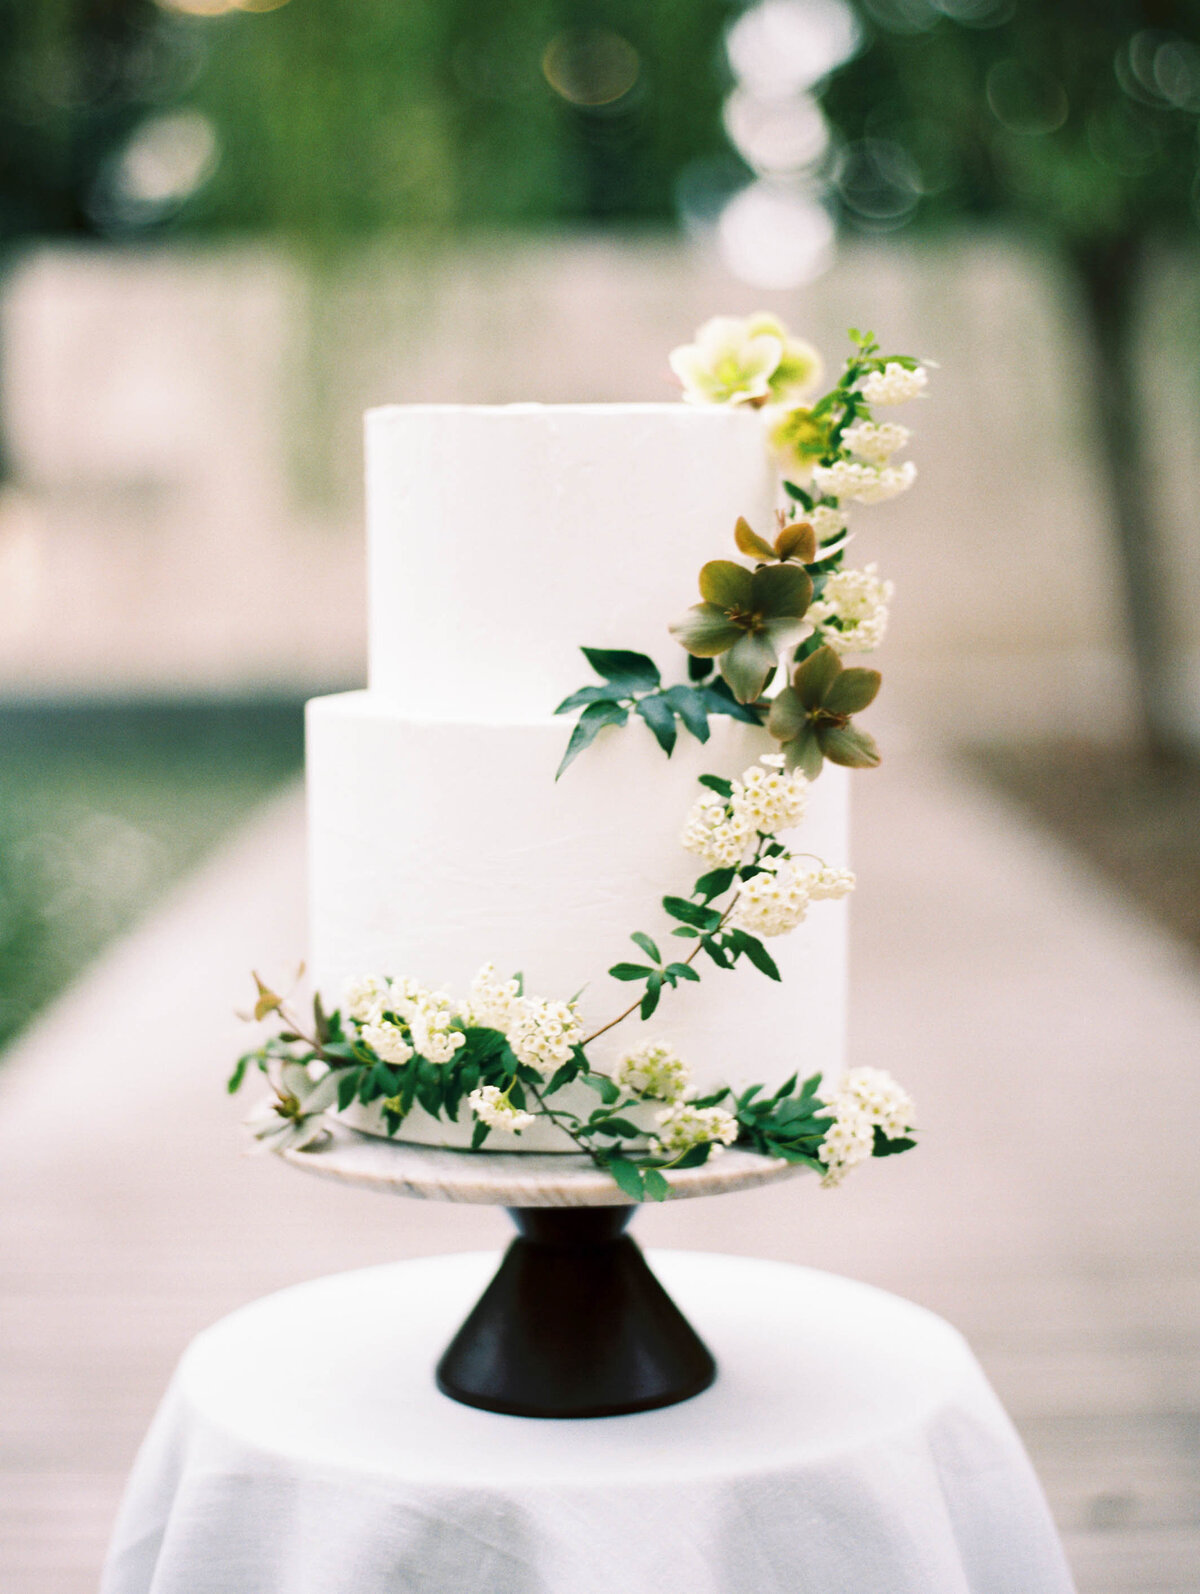 max-owens-design-nasher-sculpture-center-wedding-08-cake-hellebores